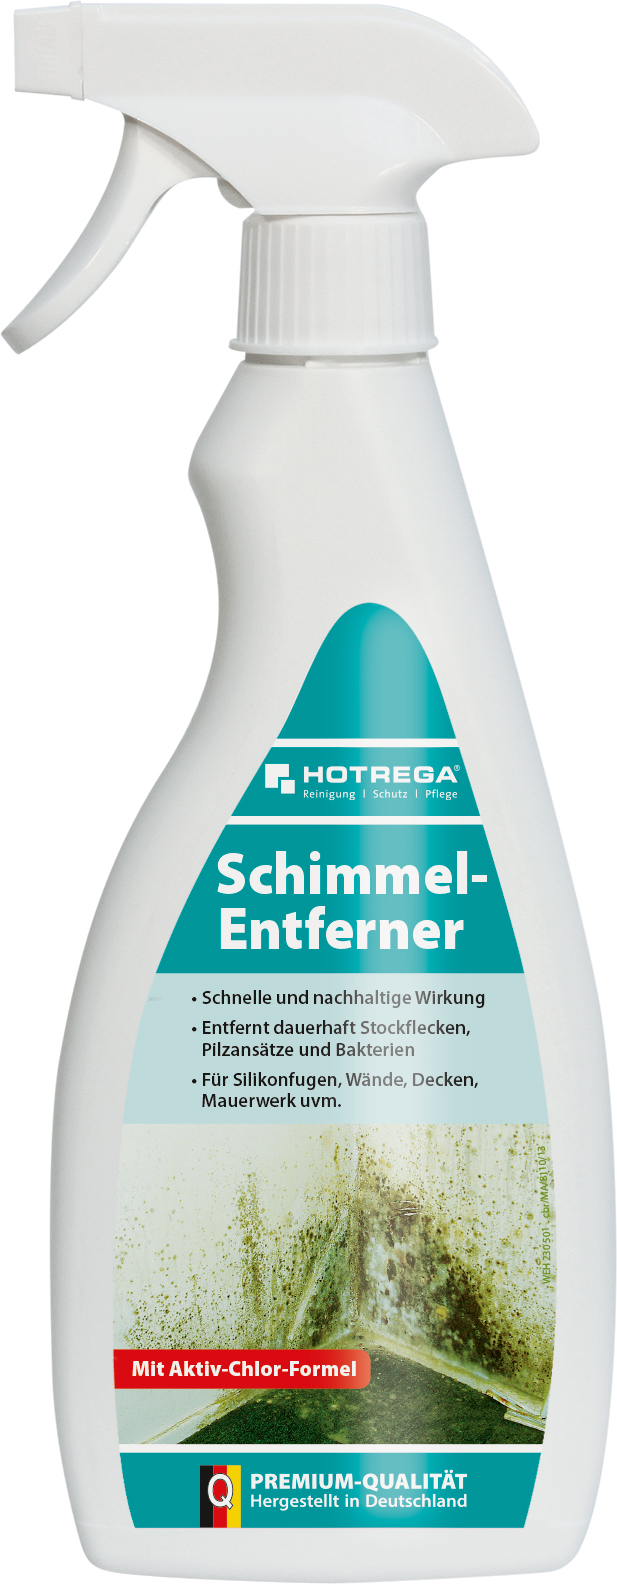 HOTREGA Schimmel-Entferner 500ml 